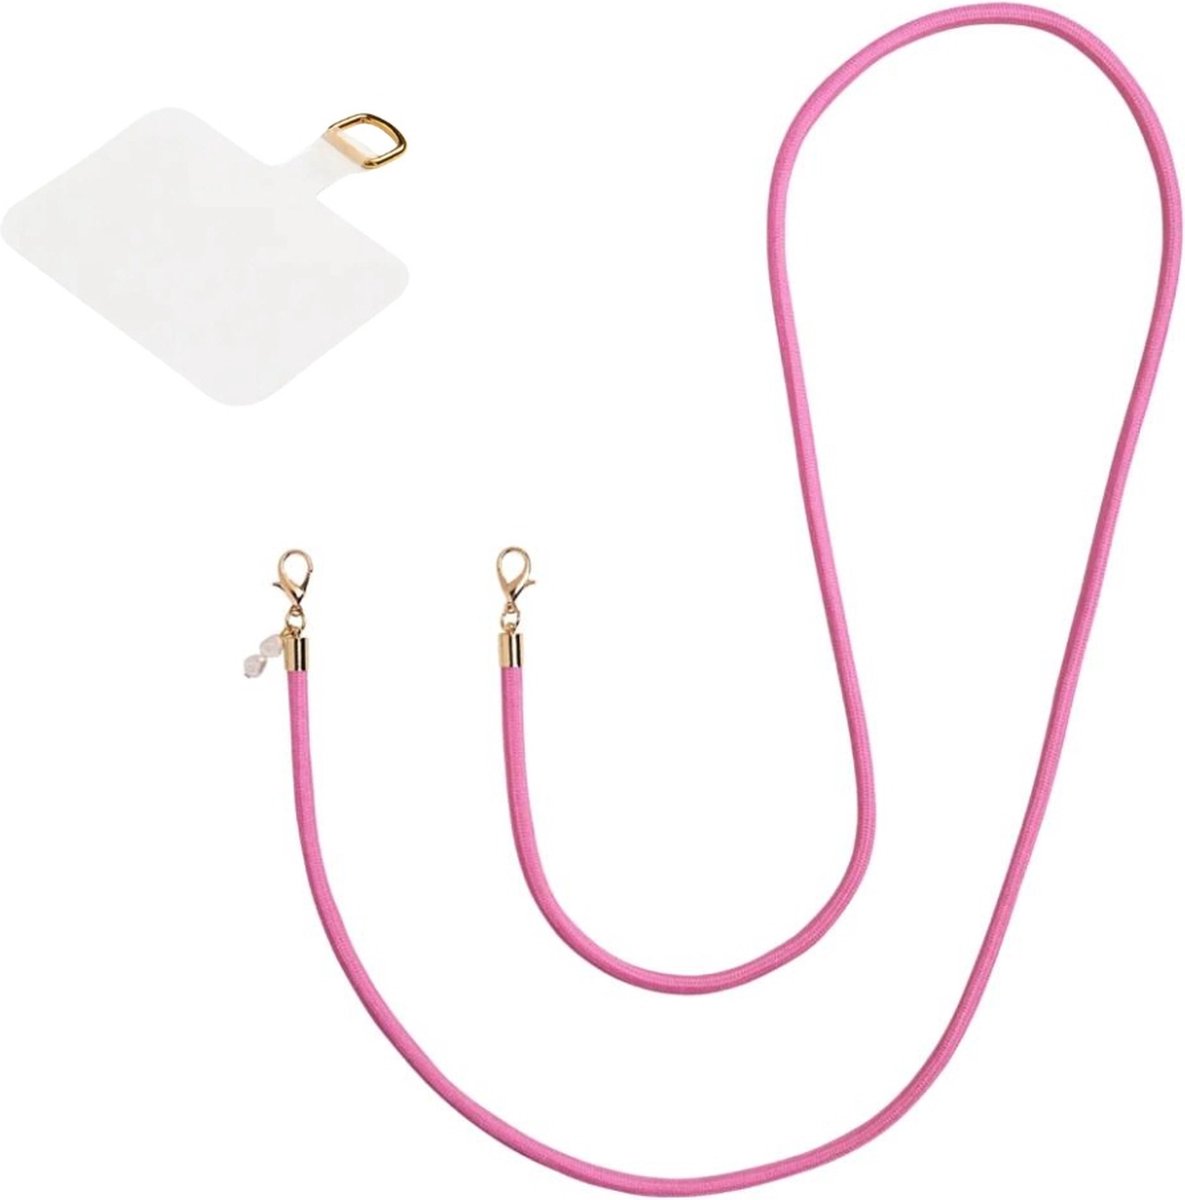 Roze telefoonkoord universeel | parels | pink phone cord | universele lanyard pad | Koord voor telefoon - Ketting voor telefoon - Phone Cord - Telefoonkoord roze met parels